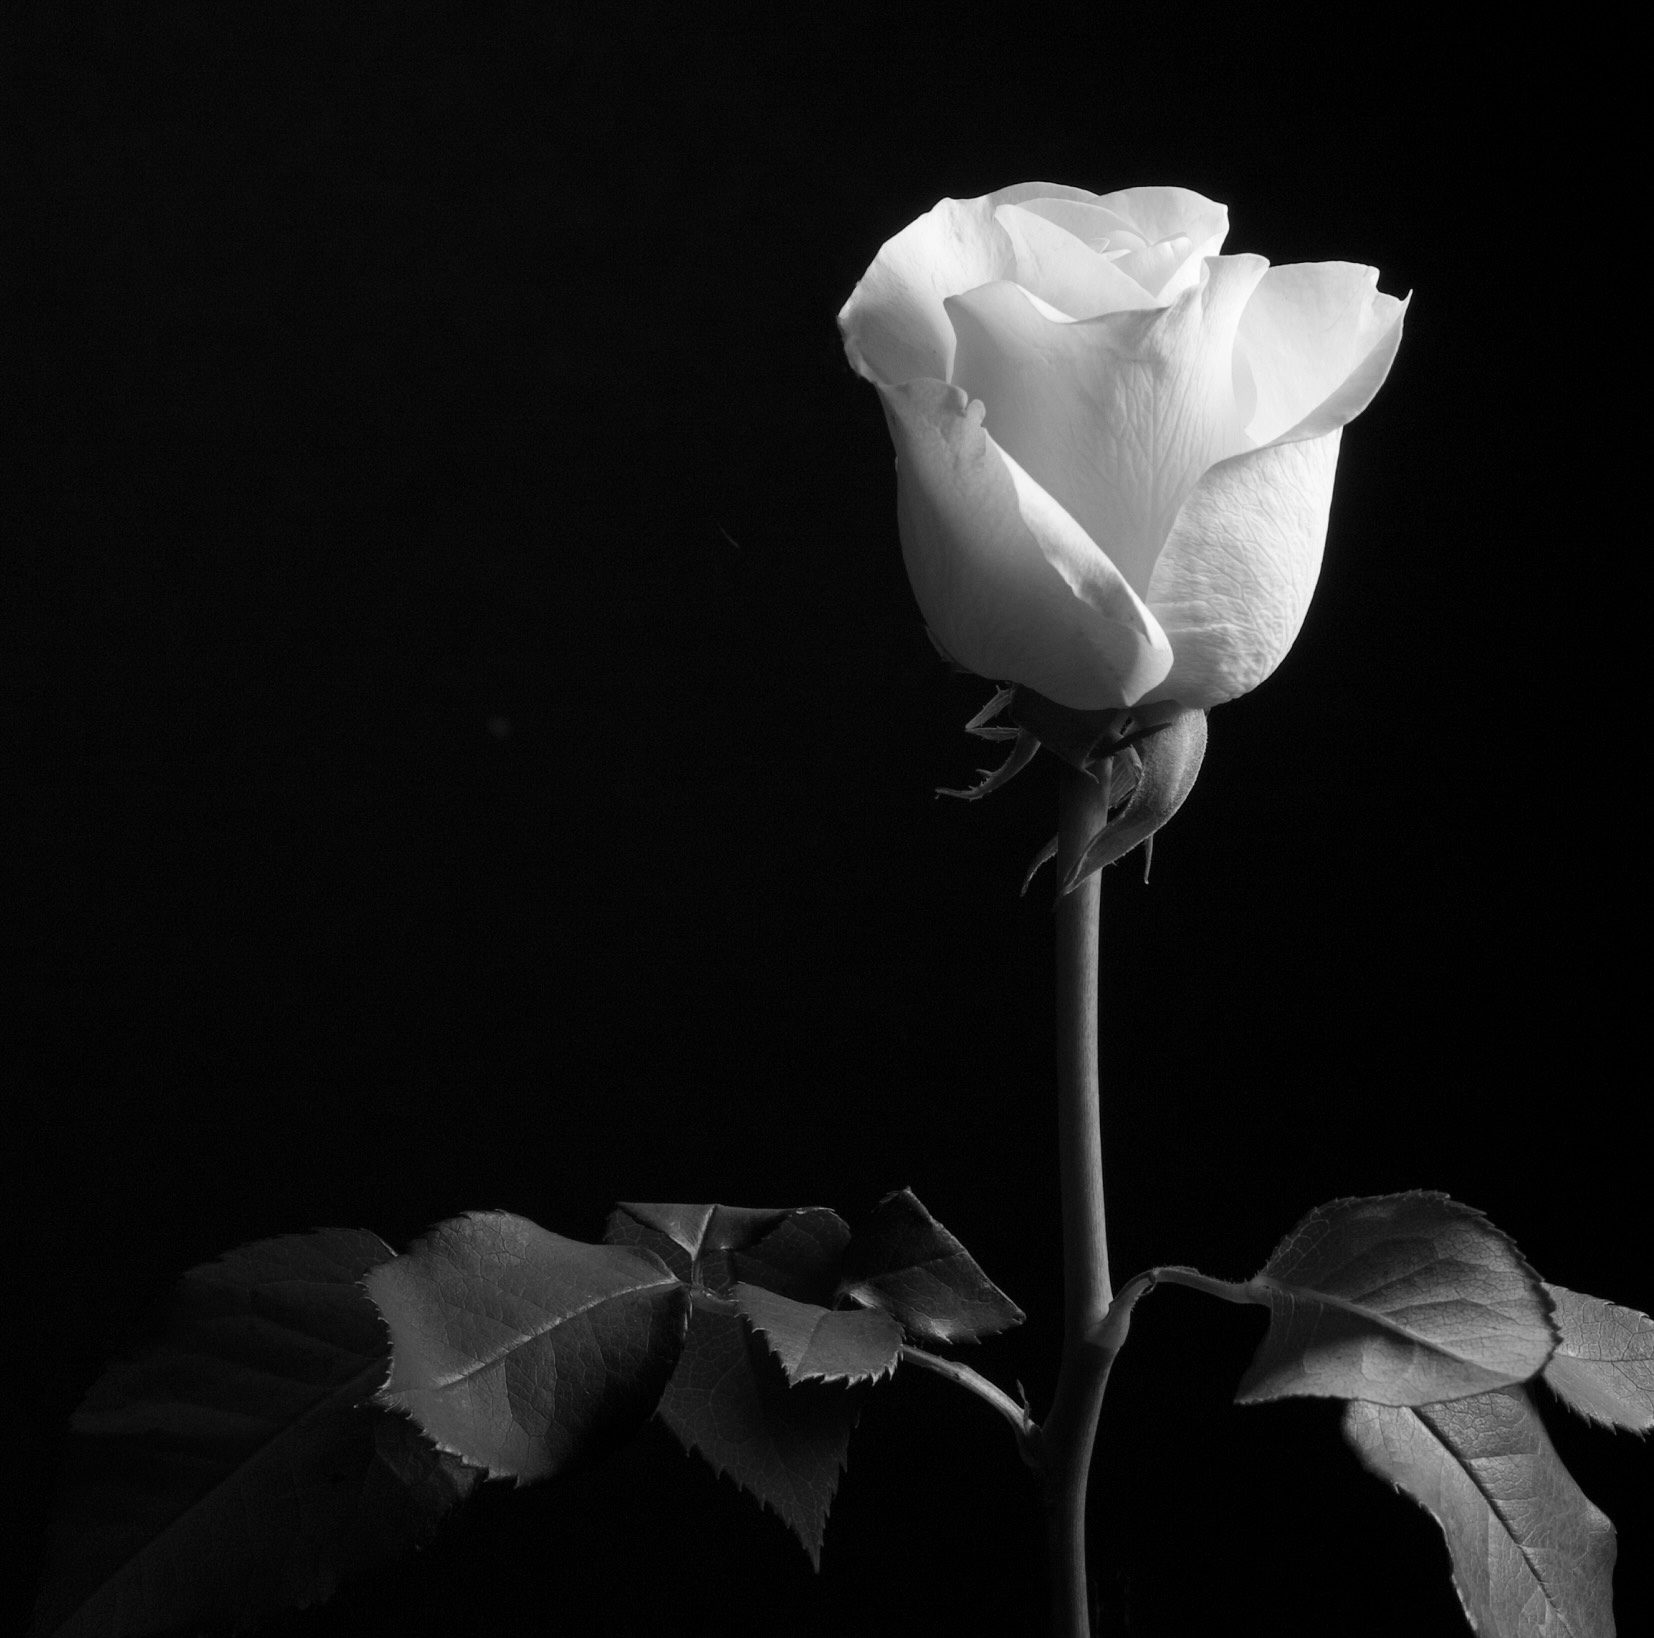 A Single Rose by Joyce Gemmell